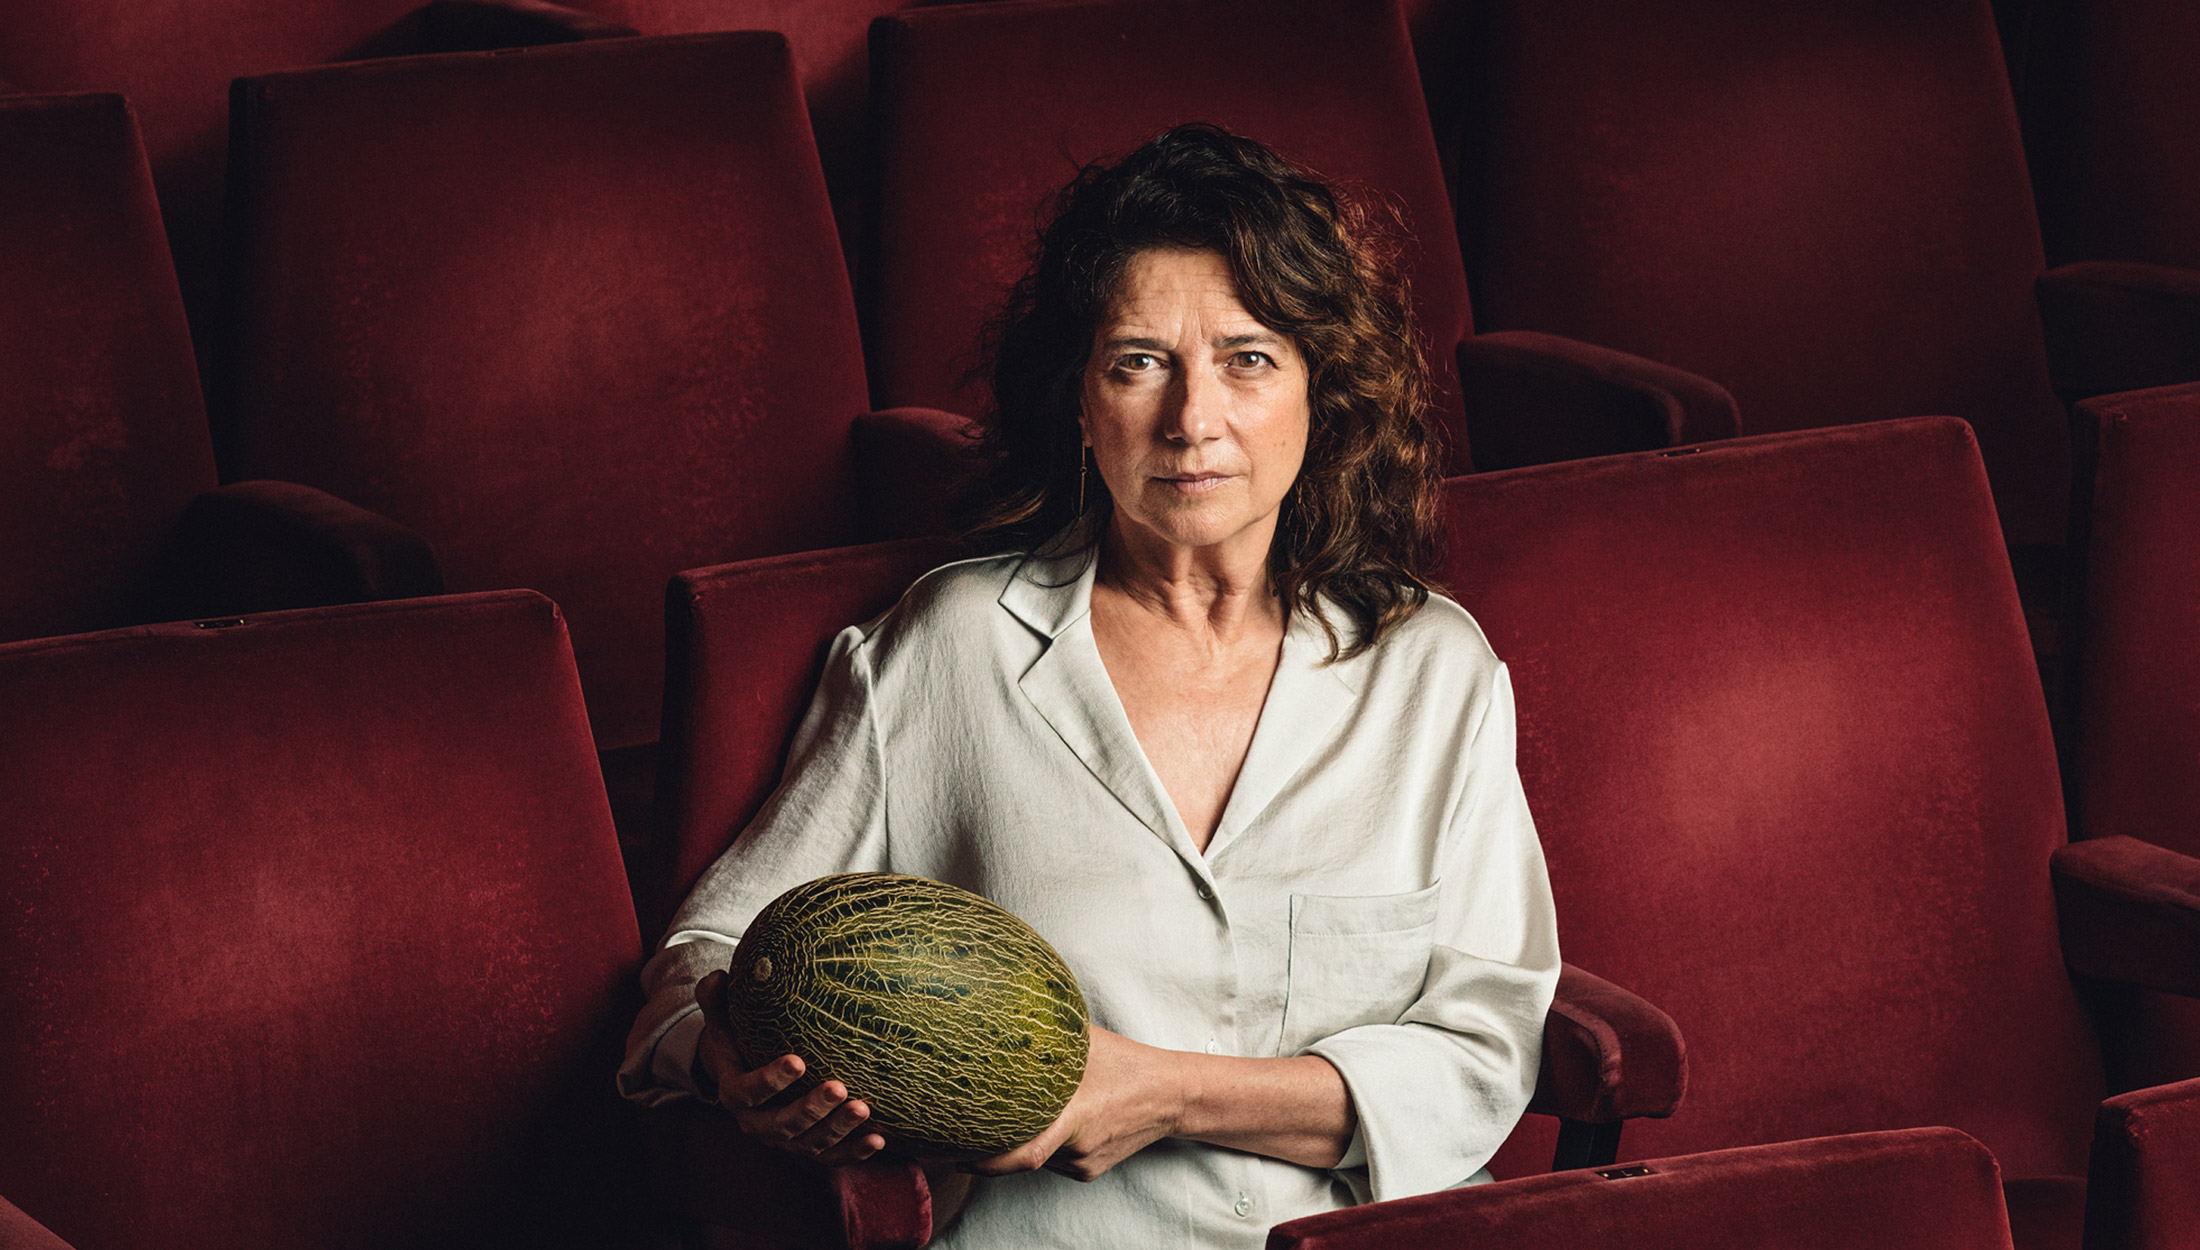 Mujer sentada y sola en una butaca granate de teatro sostiene un melón mirando fijamente a cámara